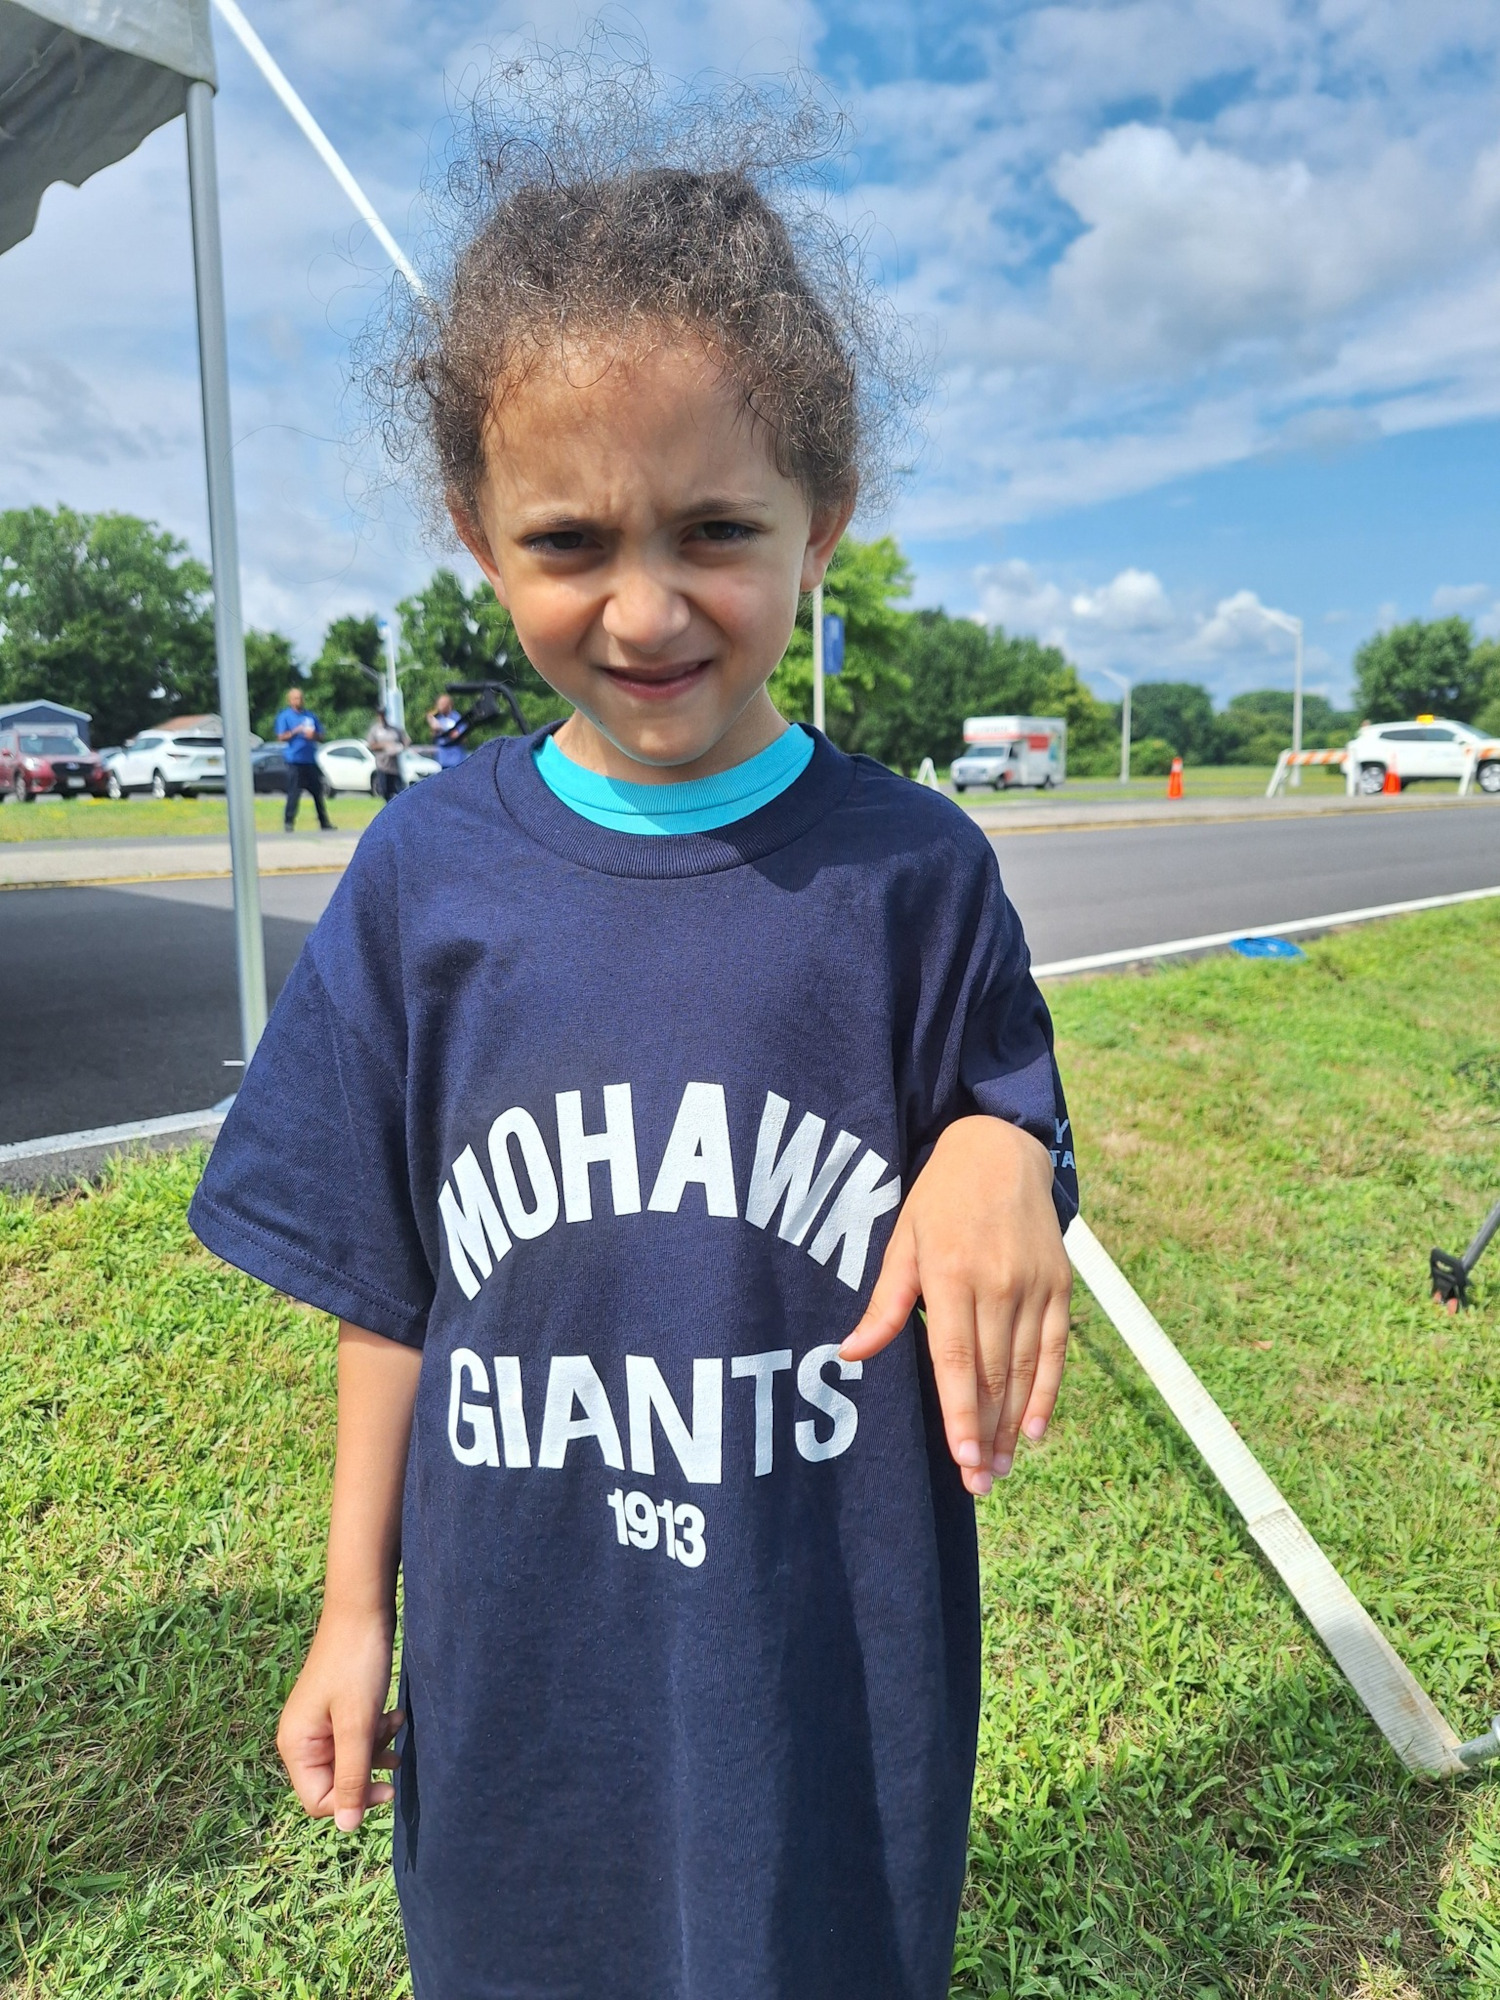 Child wearing Mohawk Giants tshirt